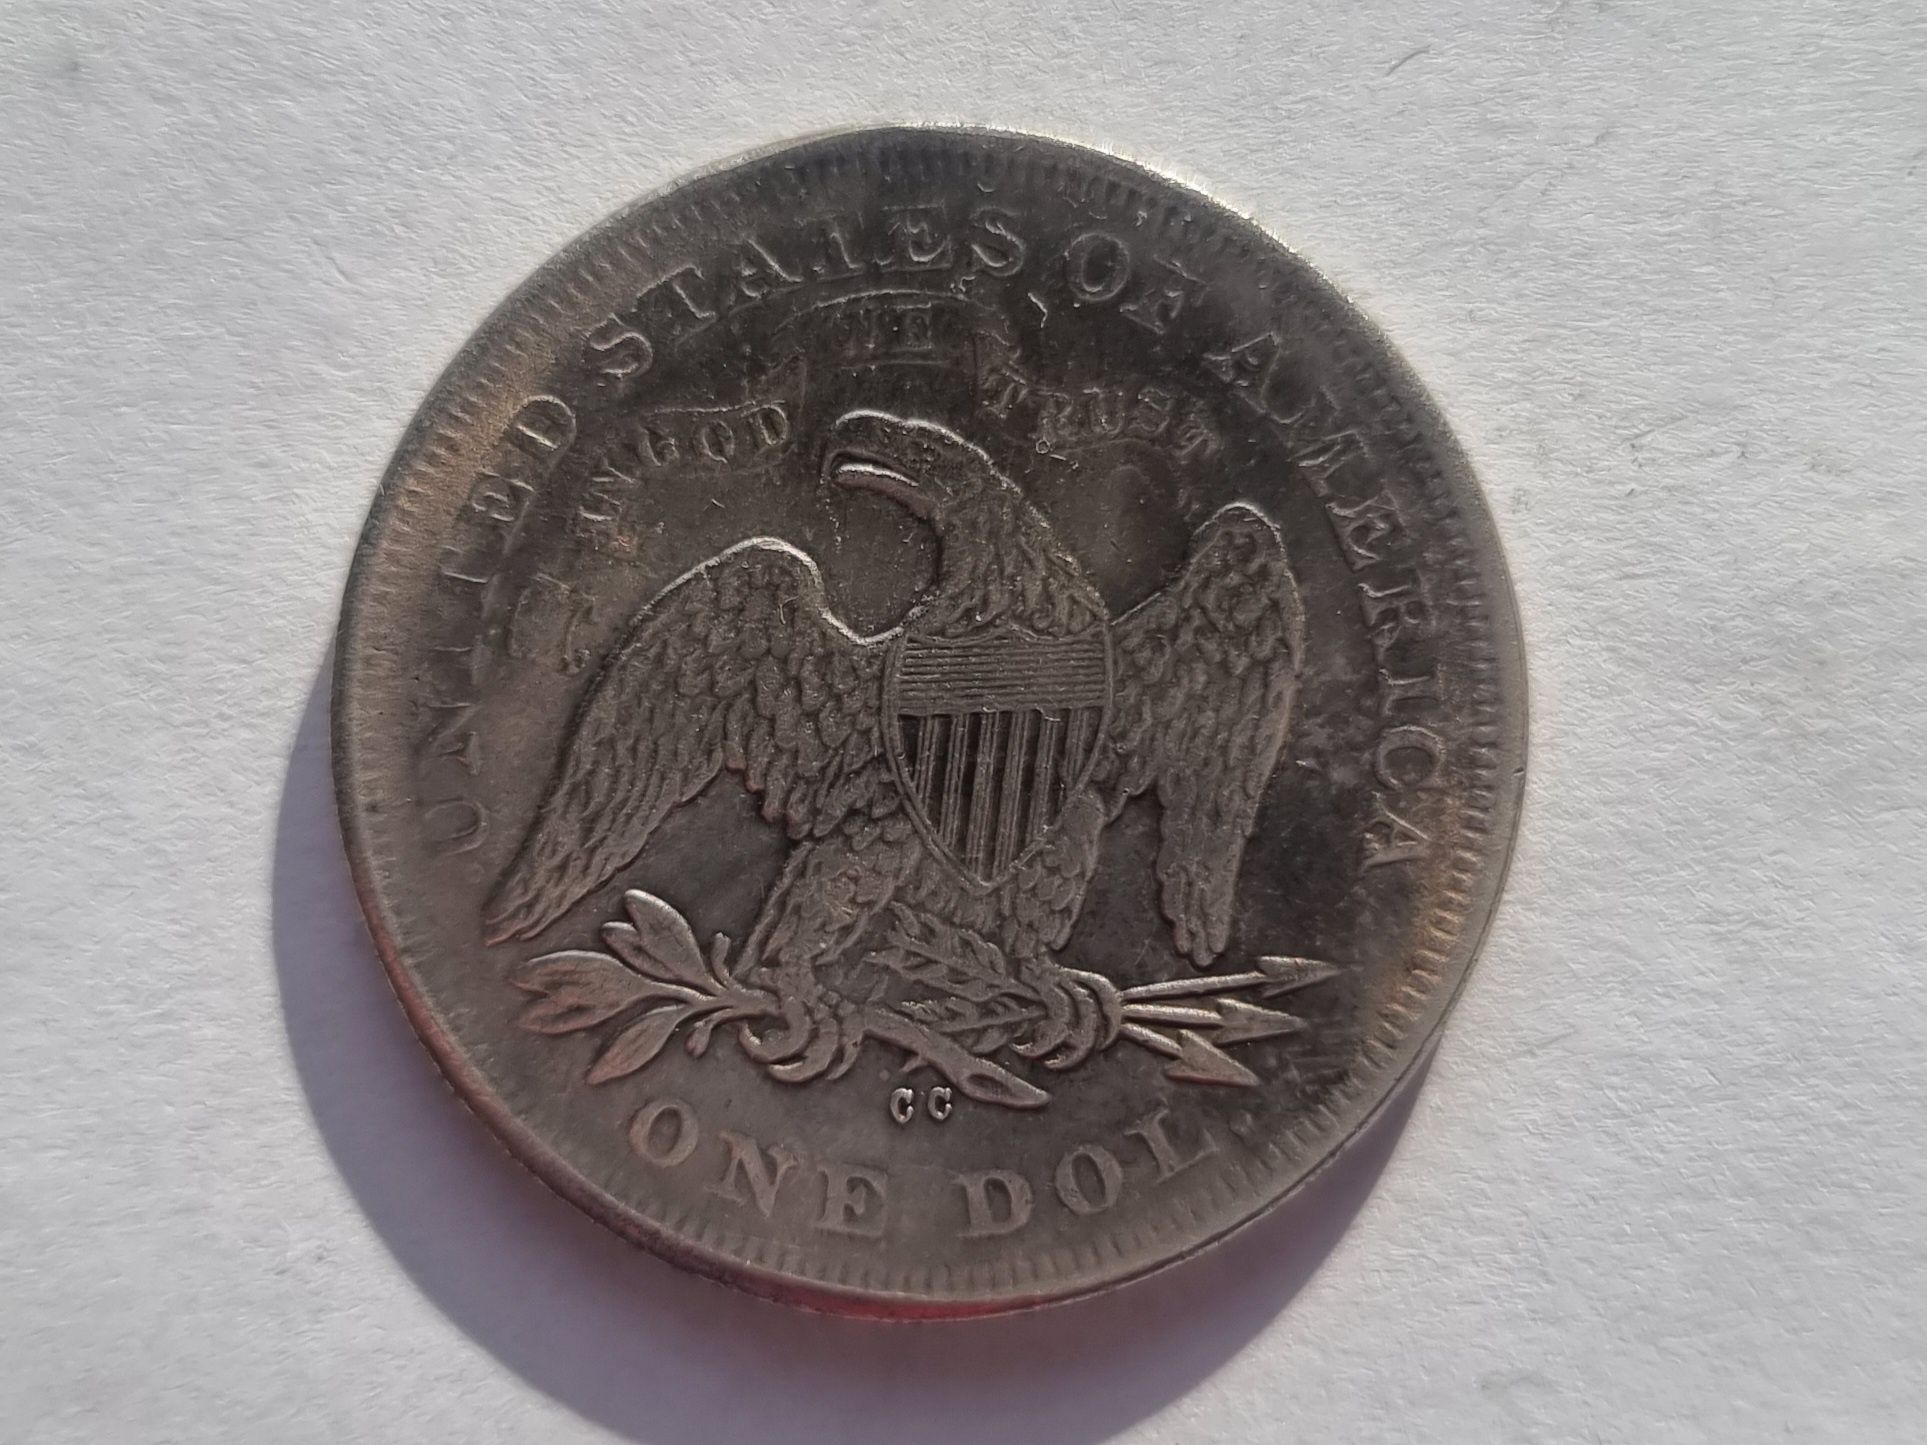 1 dolar 1842 USA kopia